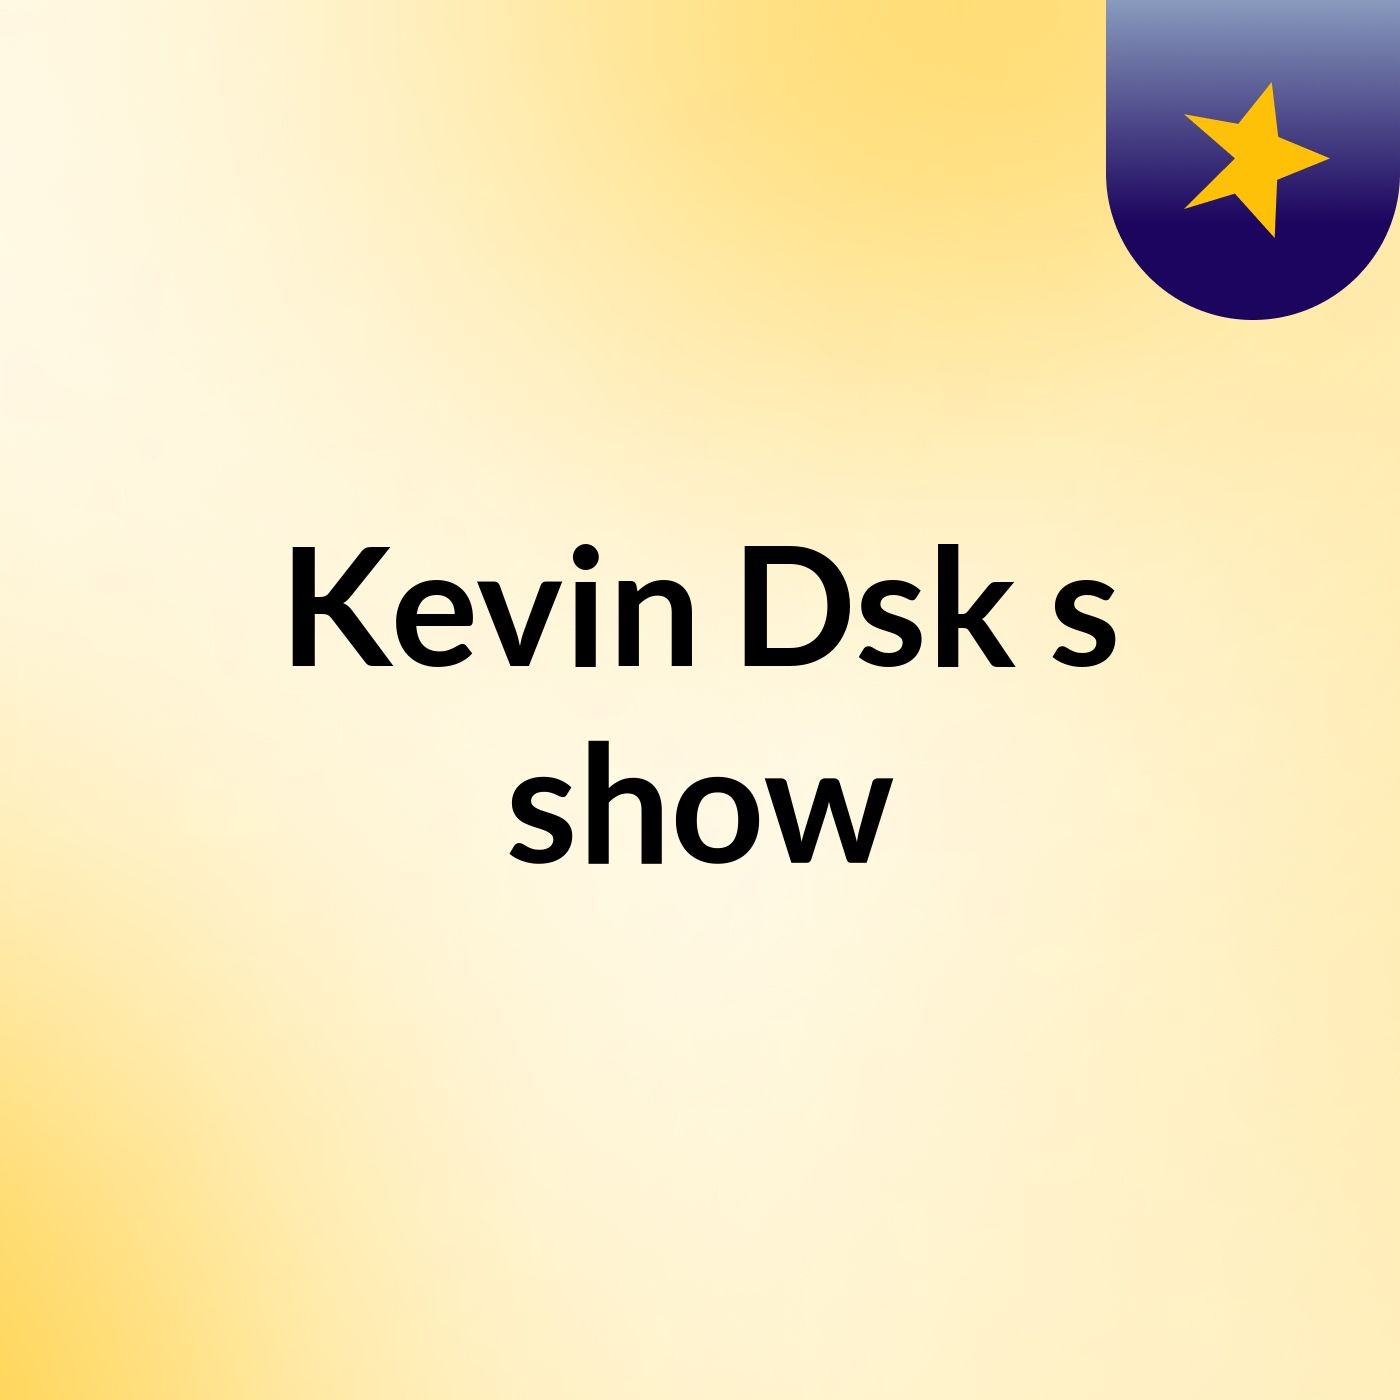 Kevin Dsk's show:Kevin Dsk